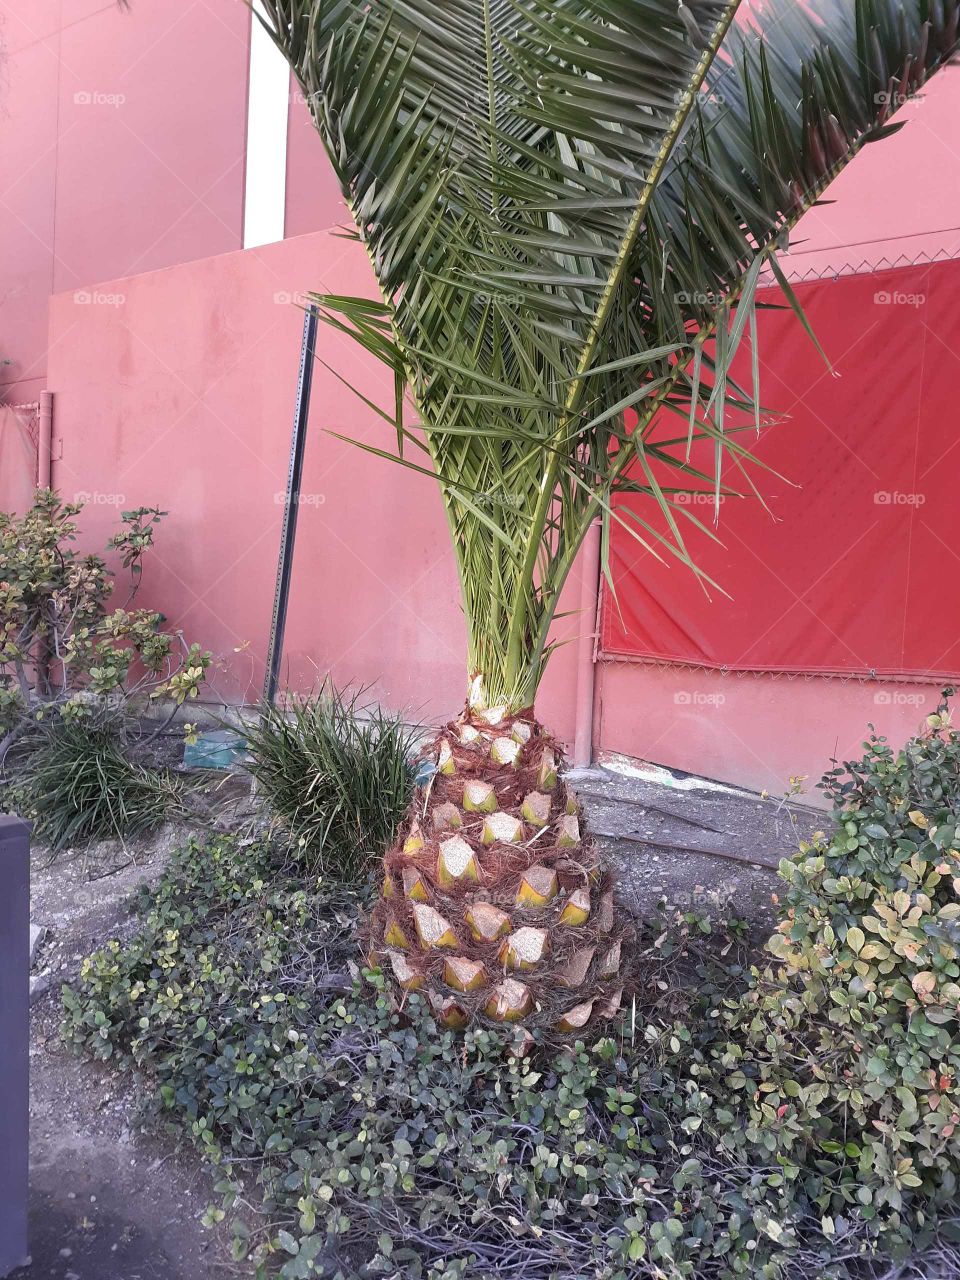 Pineapple shaped palm tree